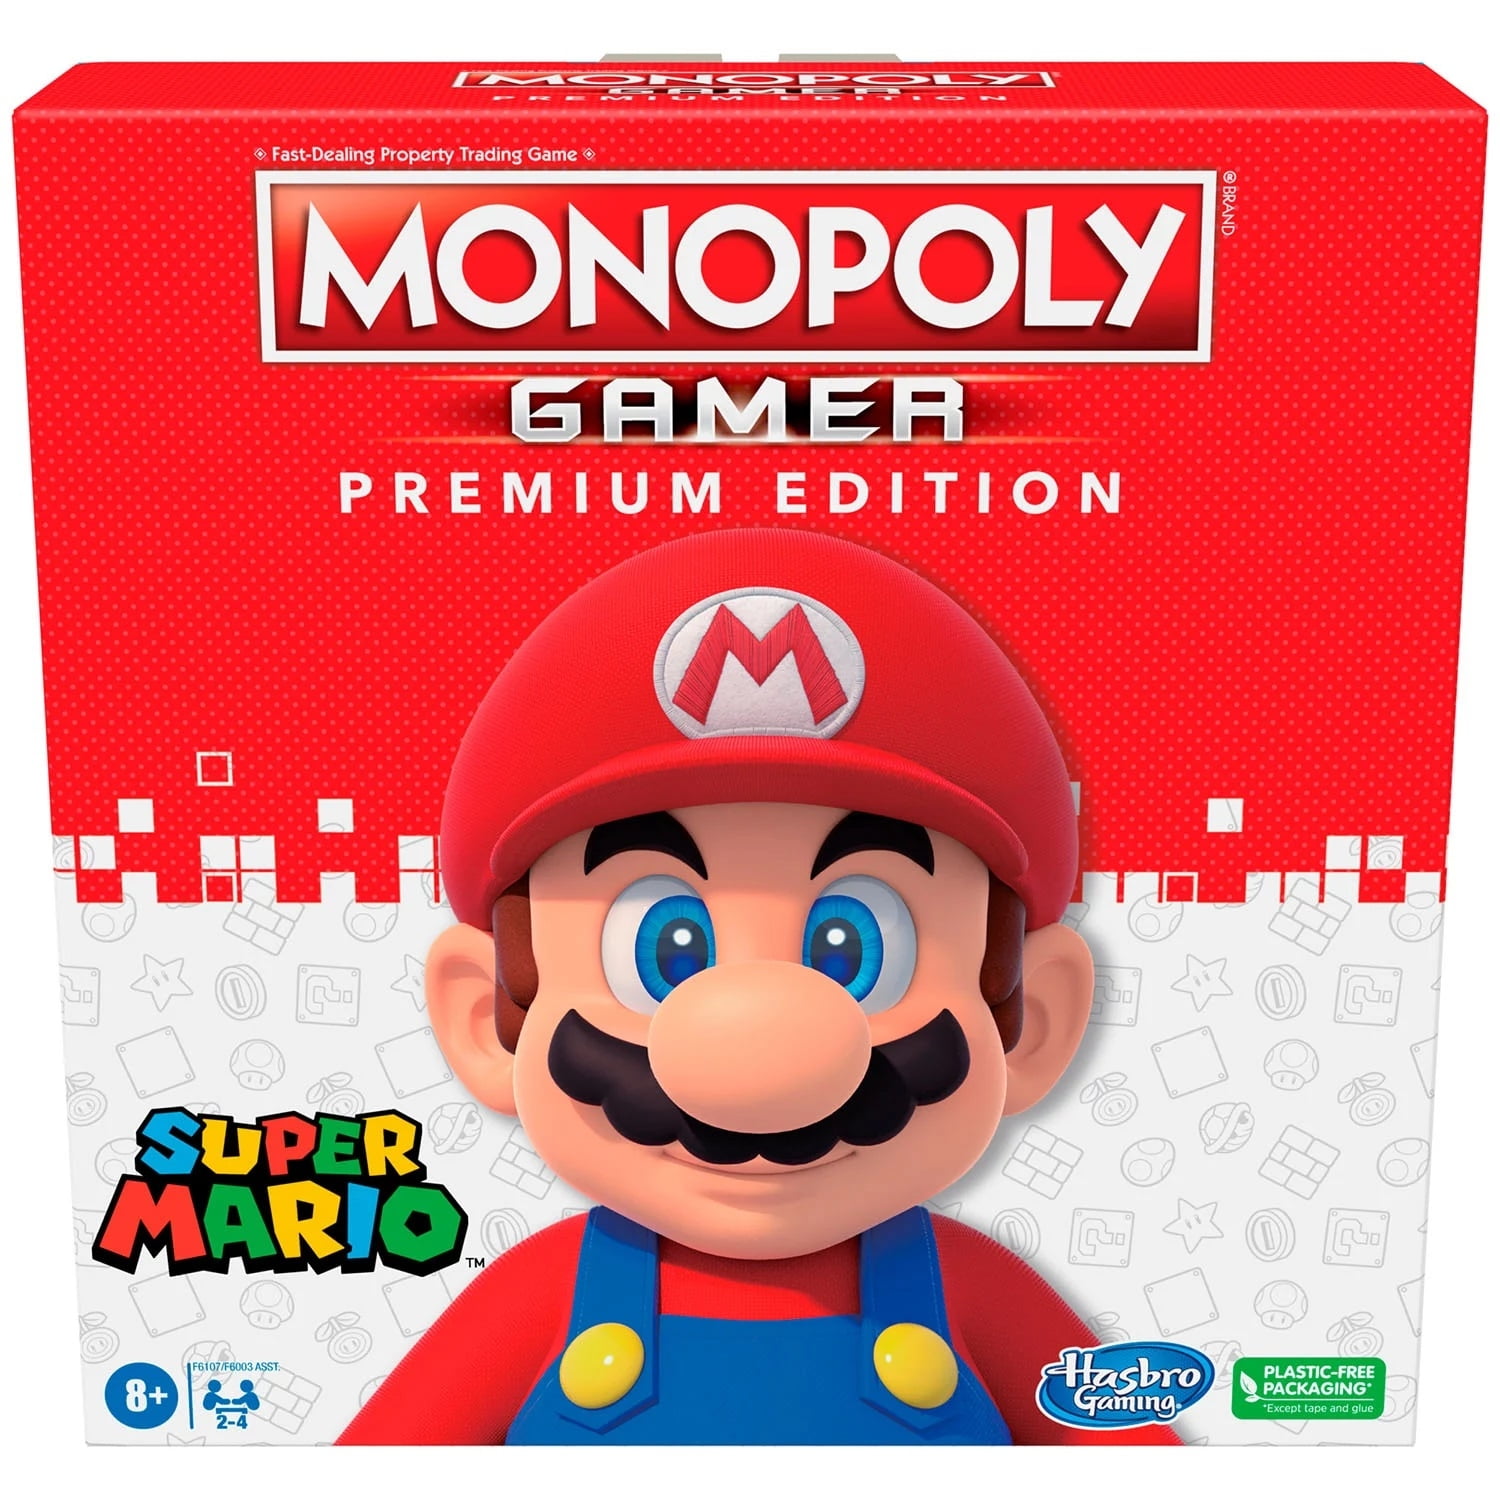 Monopoly: Super Mario Edicion Junior — Distrito Max